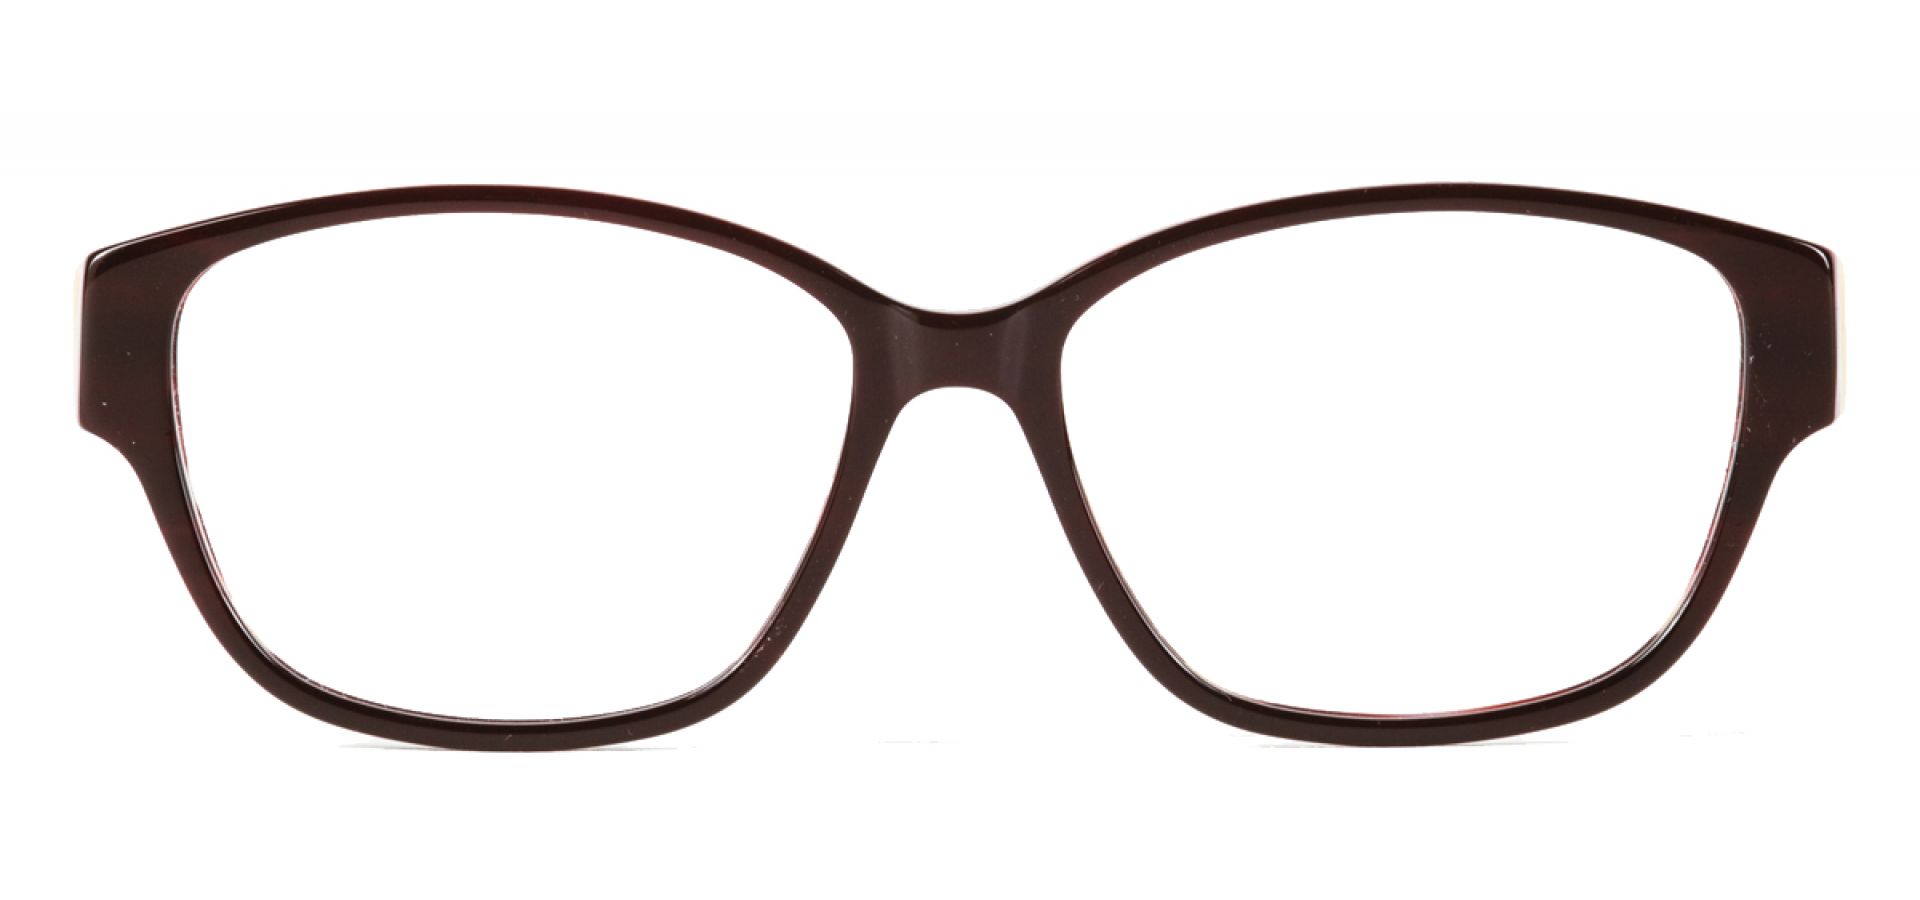 Dioptrijske naočale Ghetaldus NAOČALE ZA RAČUNALO GHD108: Boja: Dark Red Brown White, Veličina: 54/15/140, Spol: ženske, Materijal: acetat